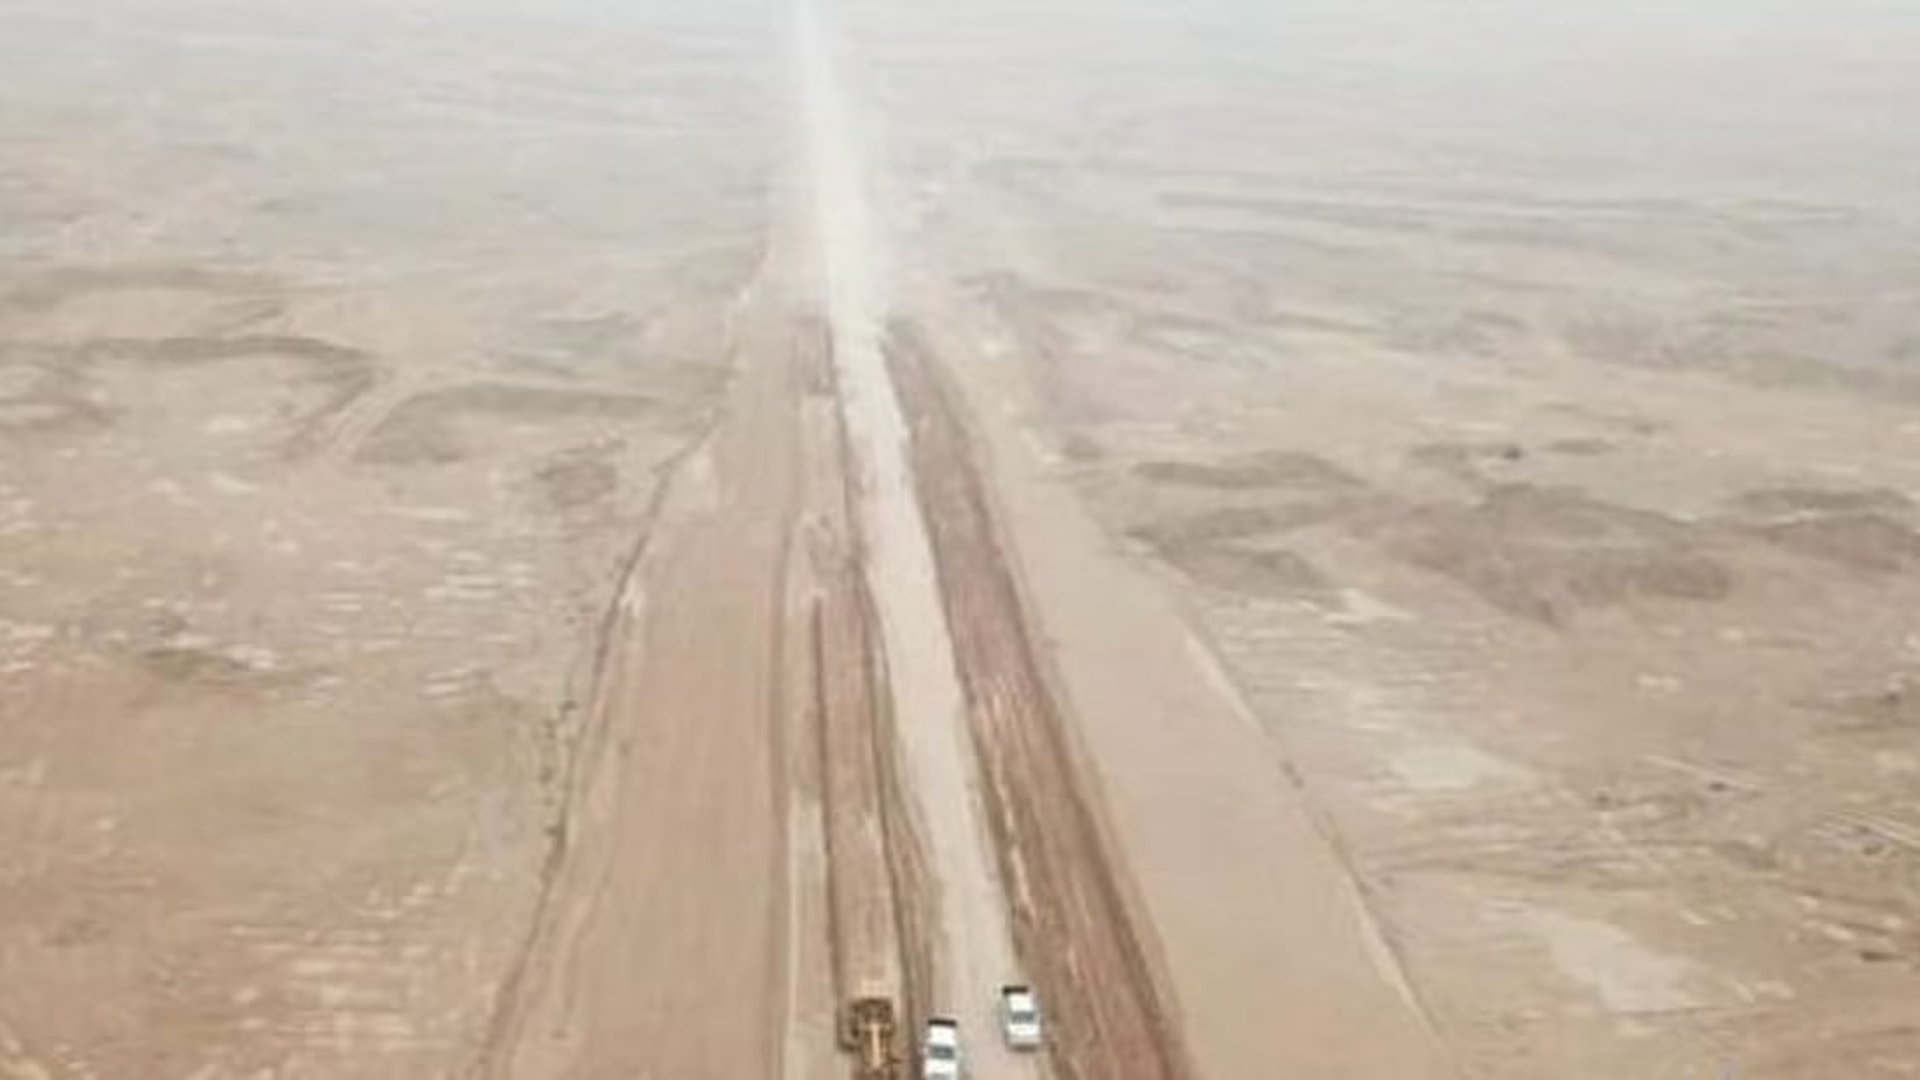 Iraq and Saudi Arabia collaborate to restore ancient Hajj route